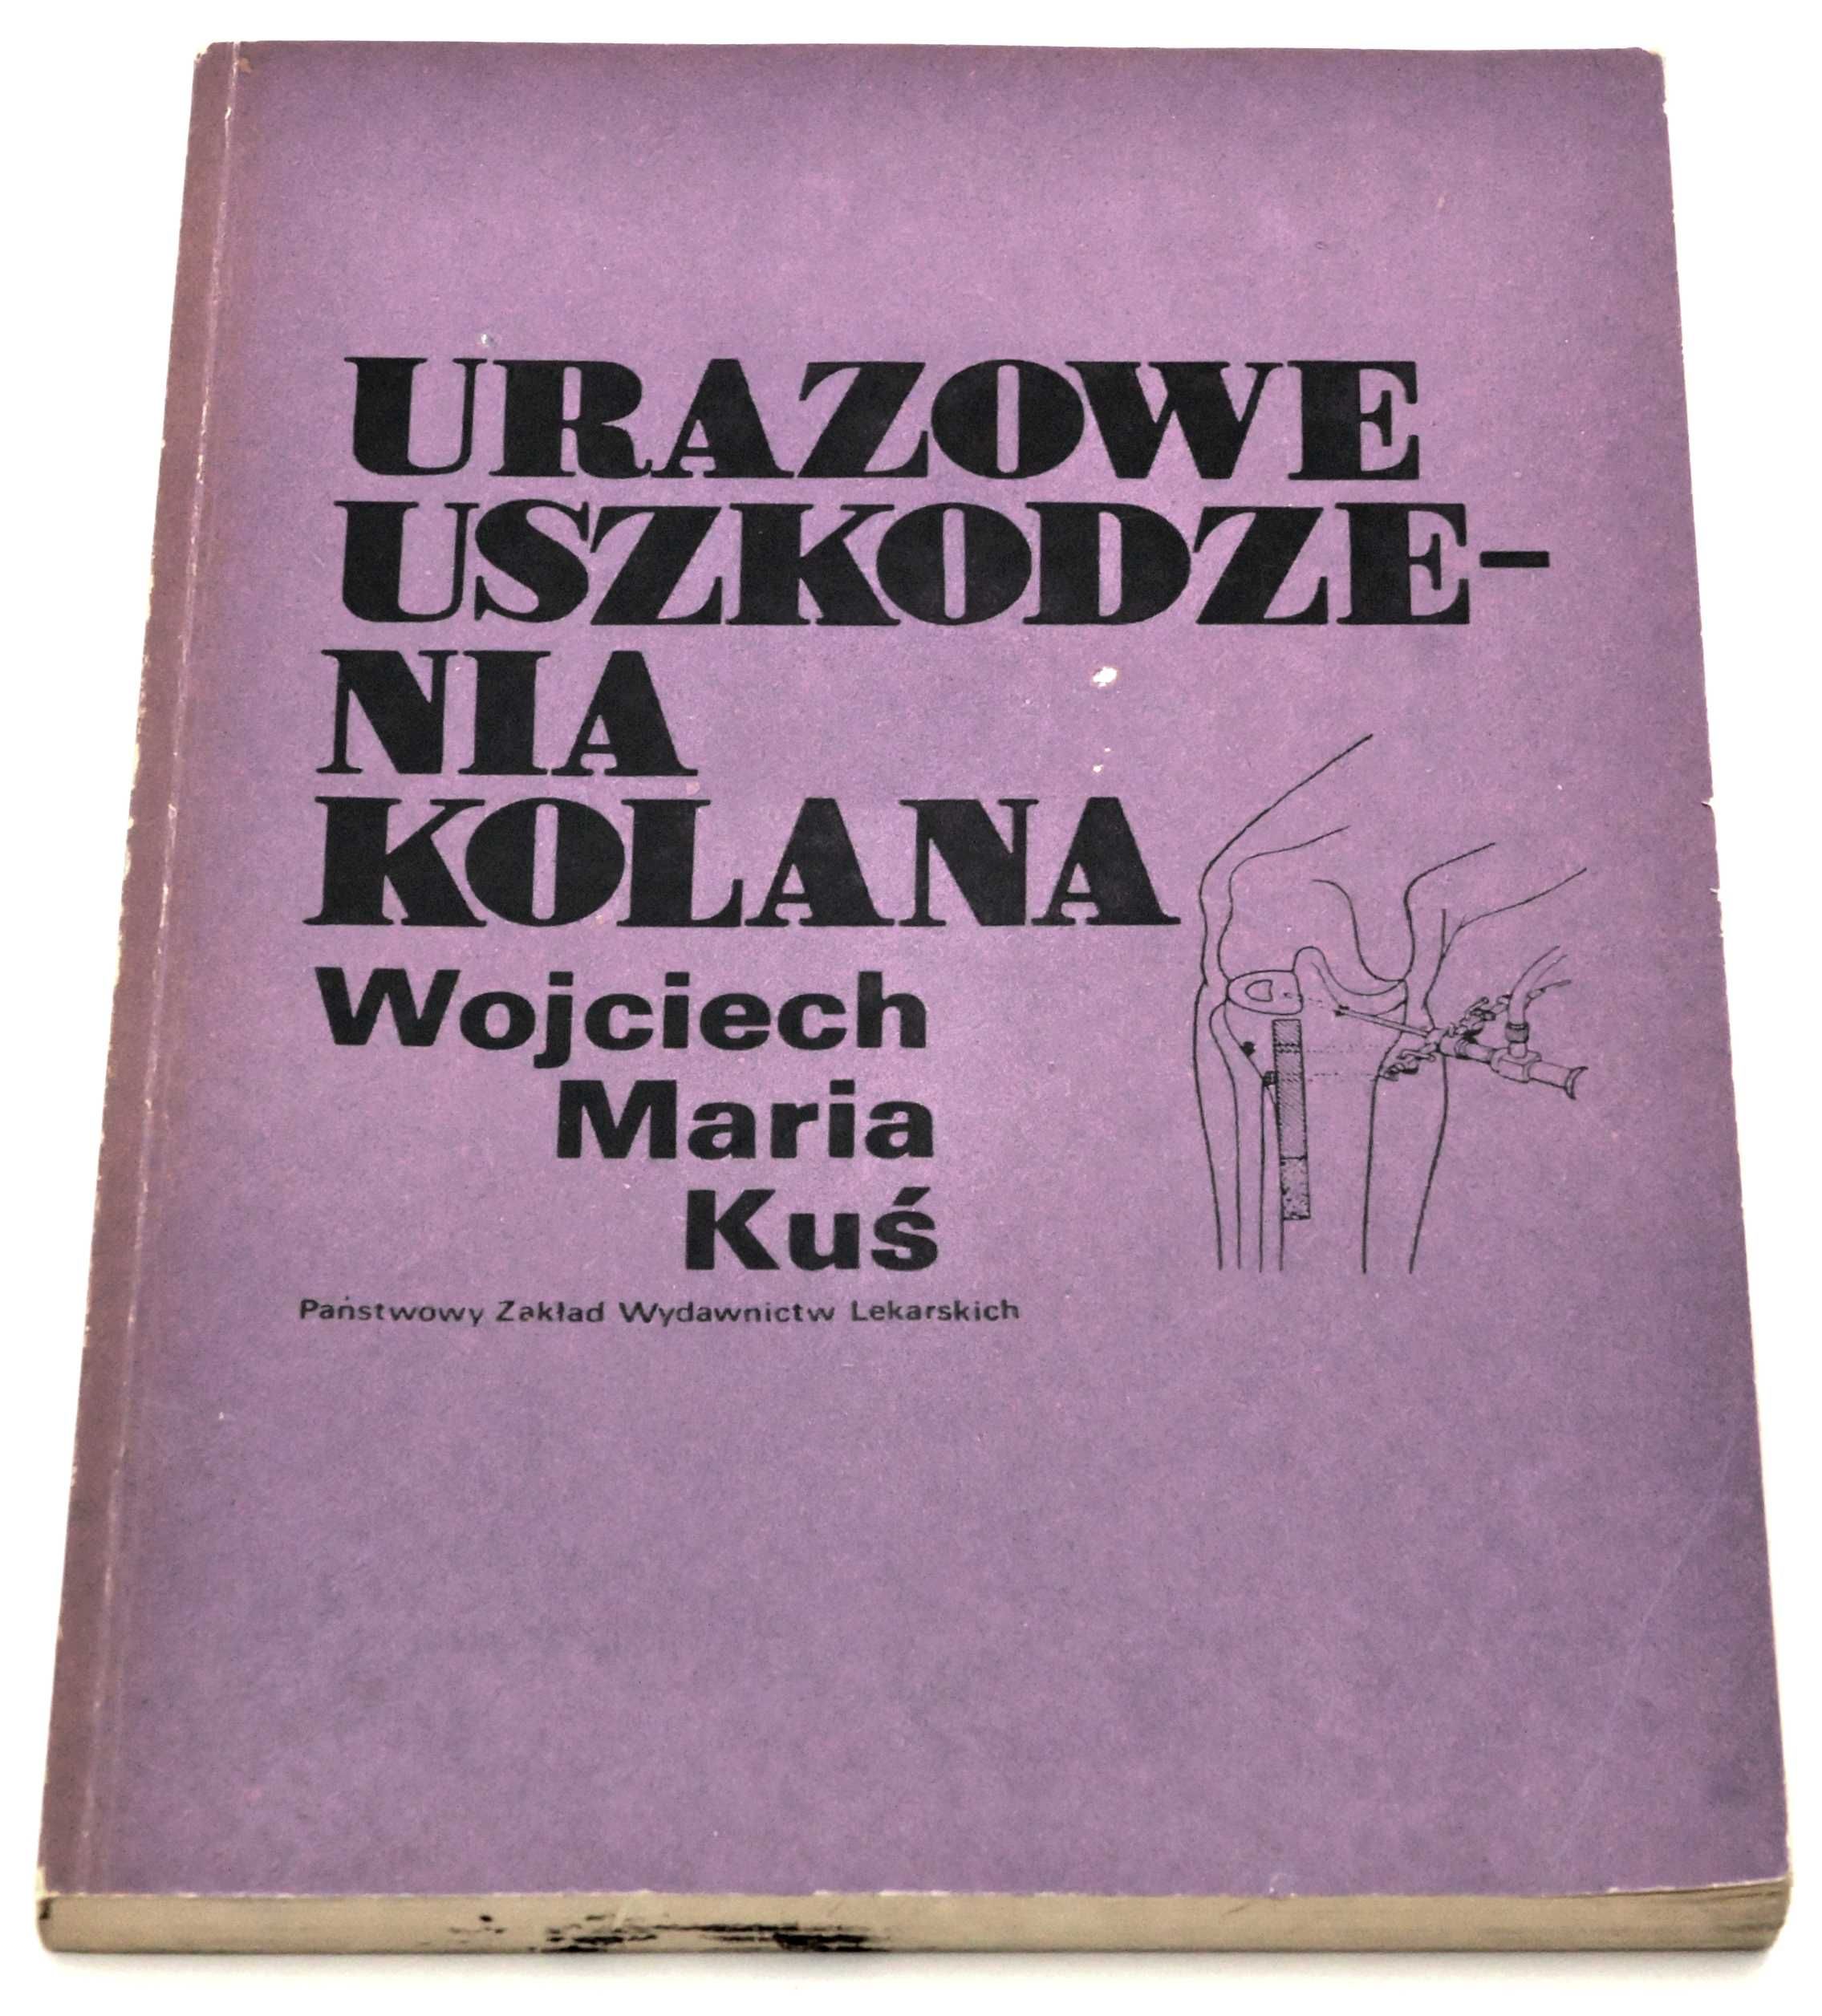 Urazowe uszkodzenia kolana Wojciech Maria Kuś